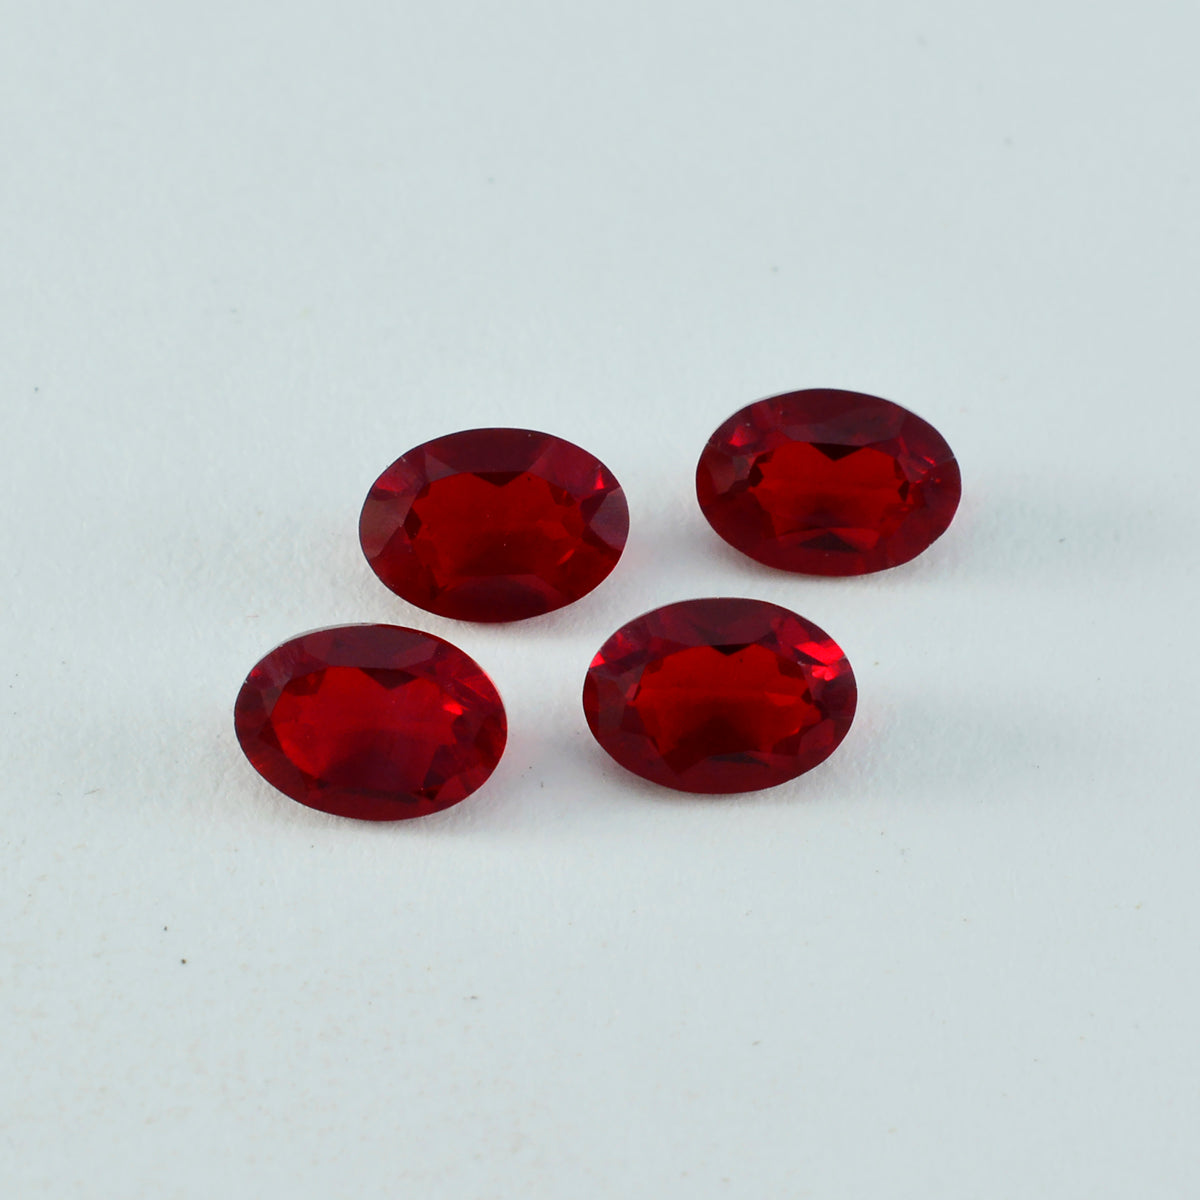 Riyogems 1 Stück roter Rubin mit CZ, facettiert, 6 x 8 mm, ovale Form, Edelsteine von erstaunlicher Qualität